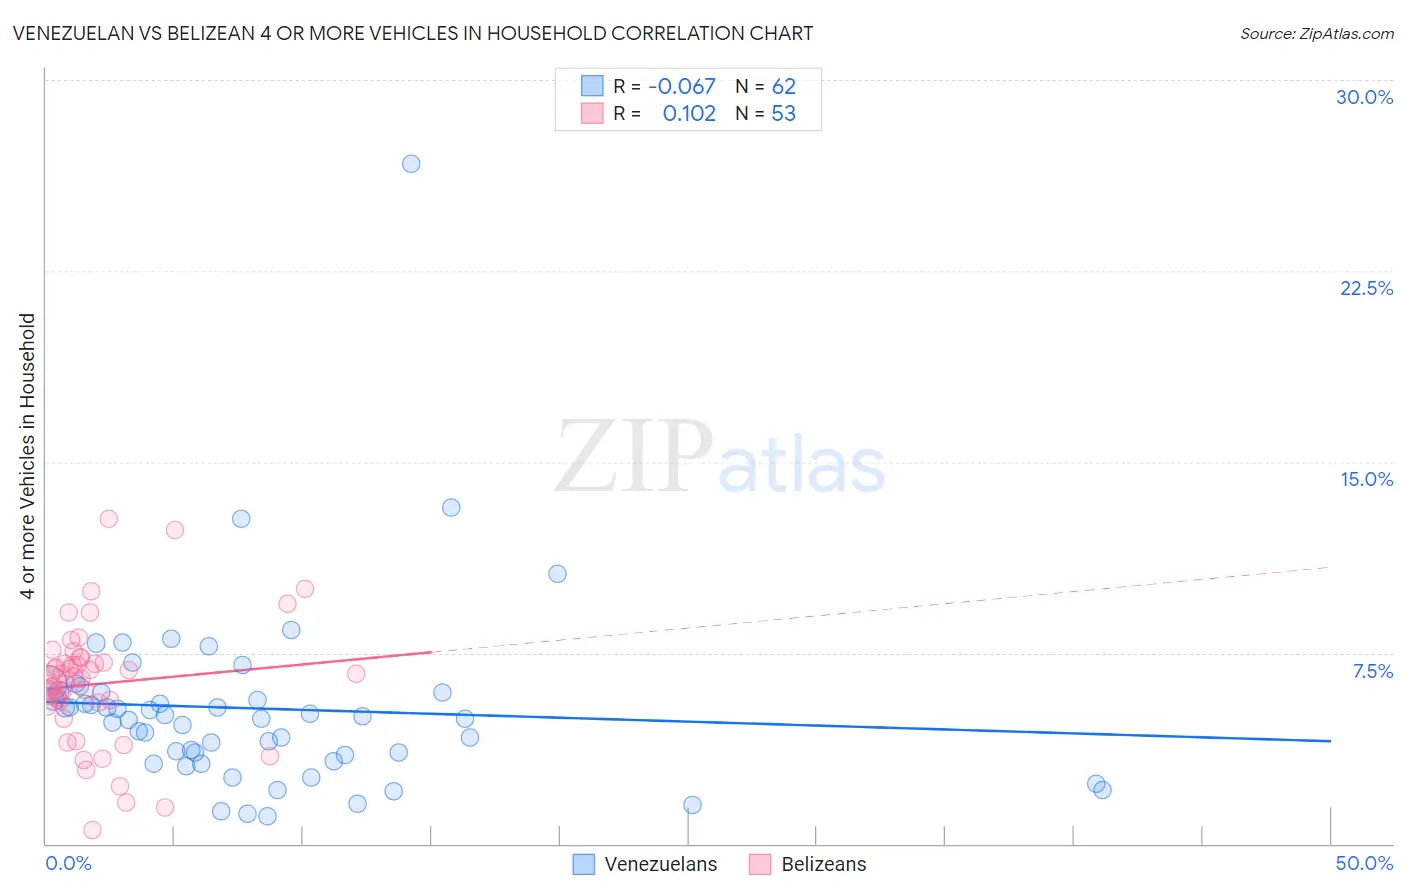 Venezuelan vs Belizean 4 or more Vehicles in Household